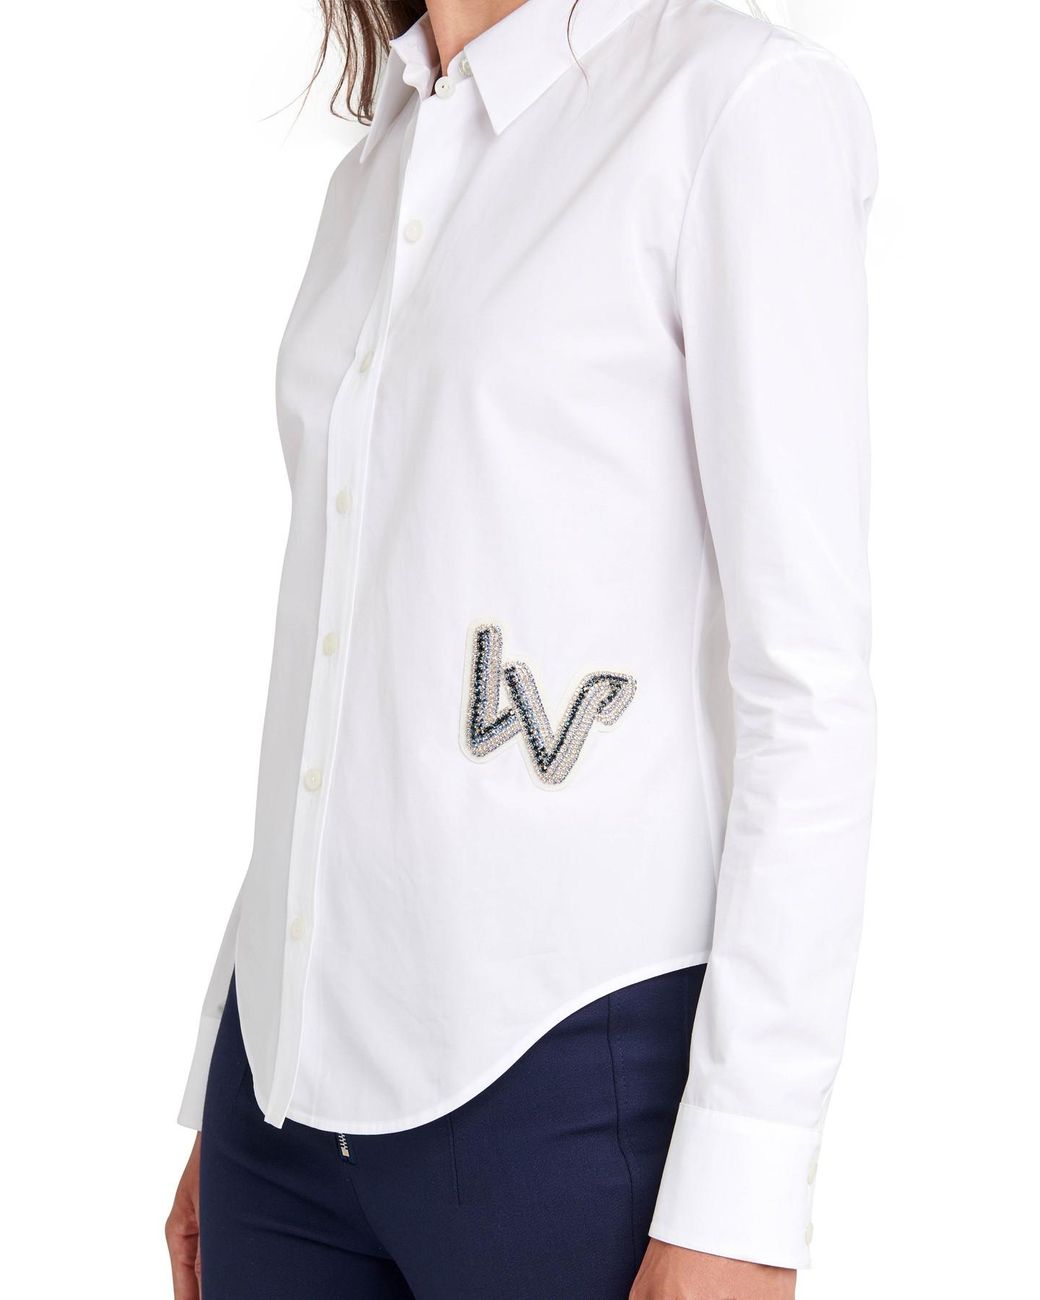 Louis Vuitton Women's V-Neck T-Shirts for Sale - Pixels